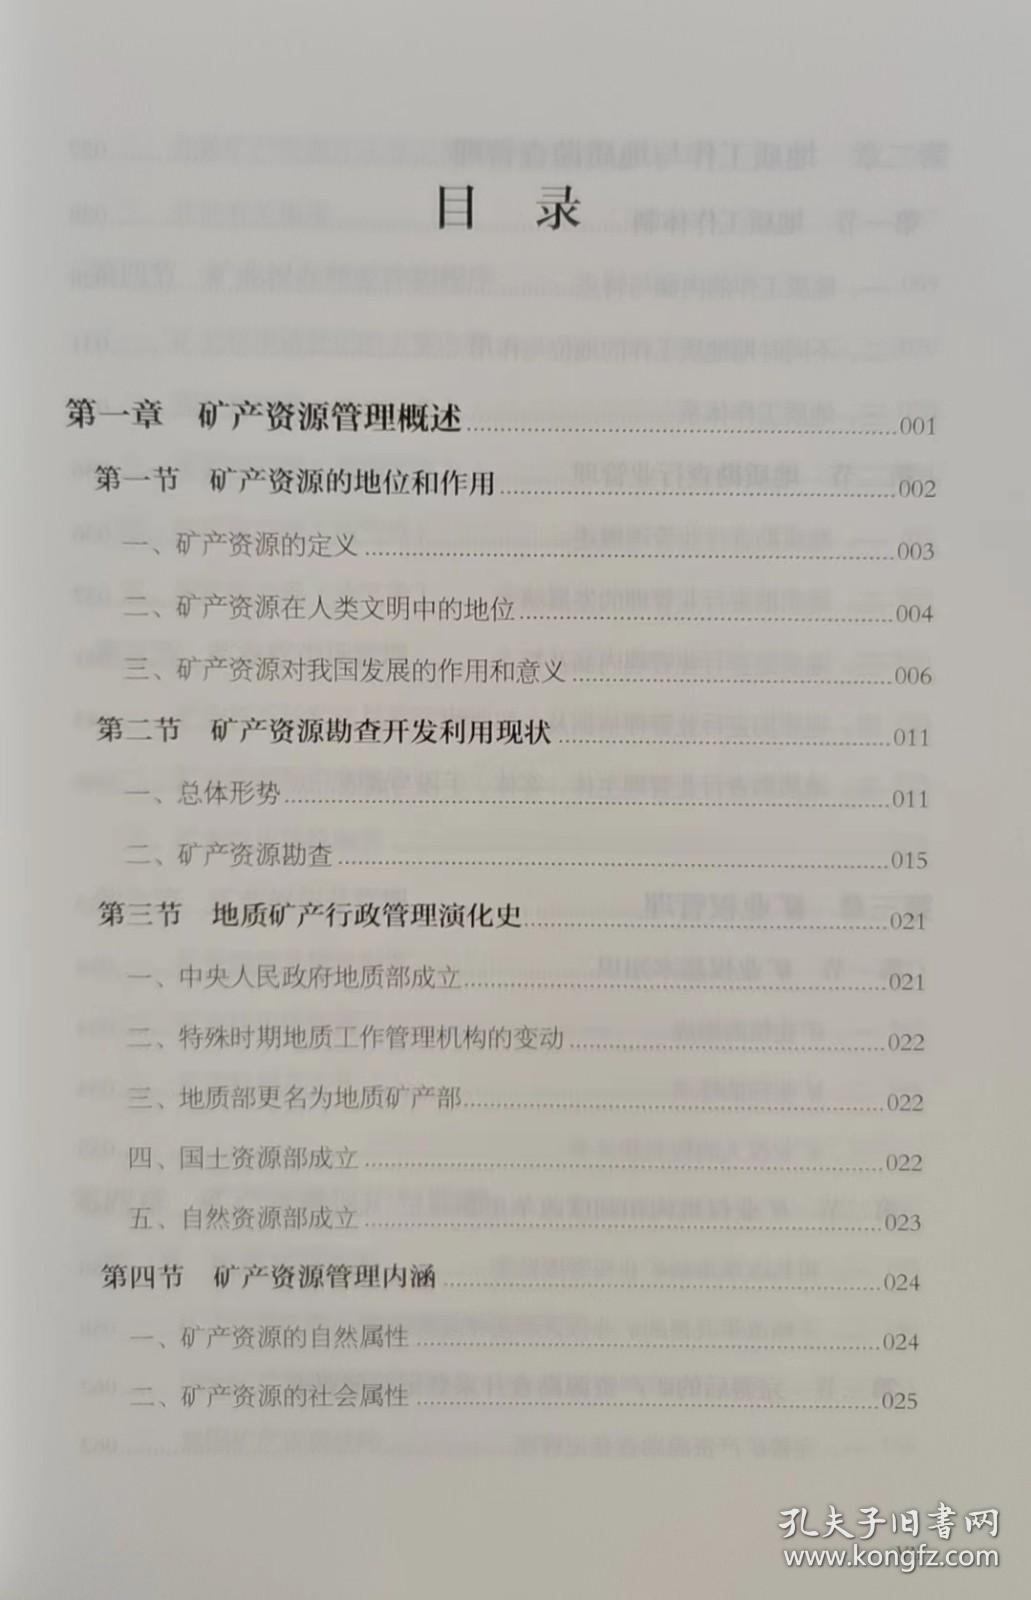 全新正版 矿产资源管理 自然资源管理从0到1系列丛书 中国大地出版社